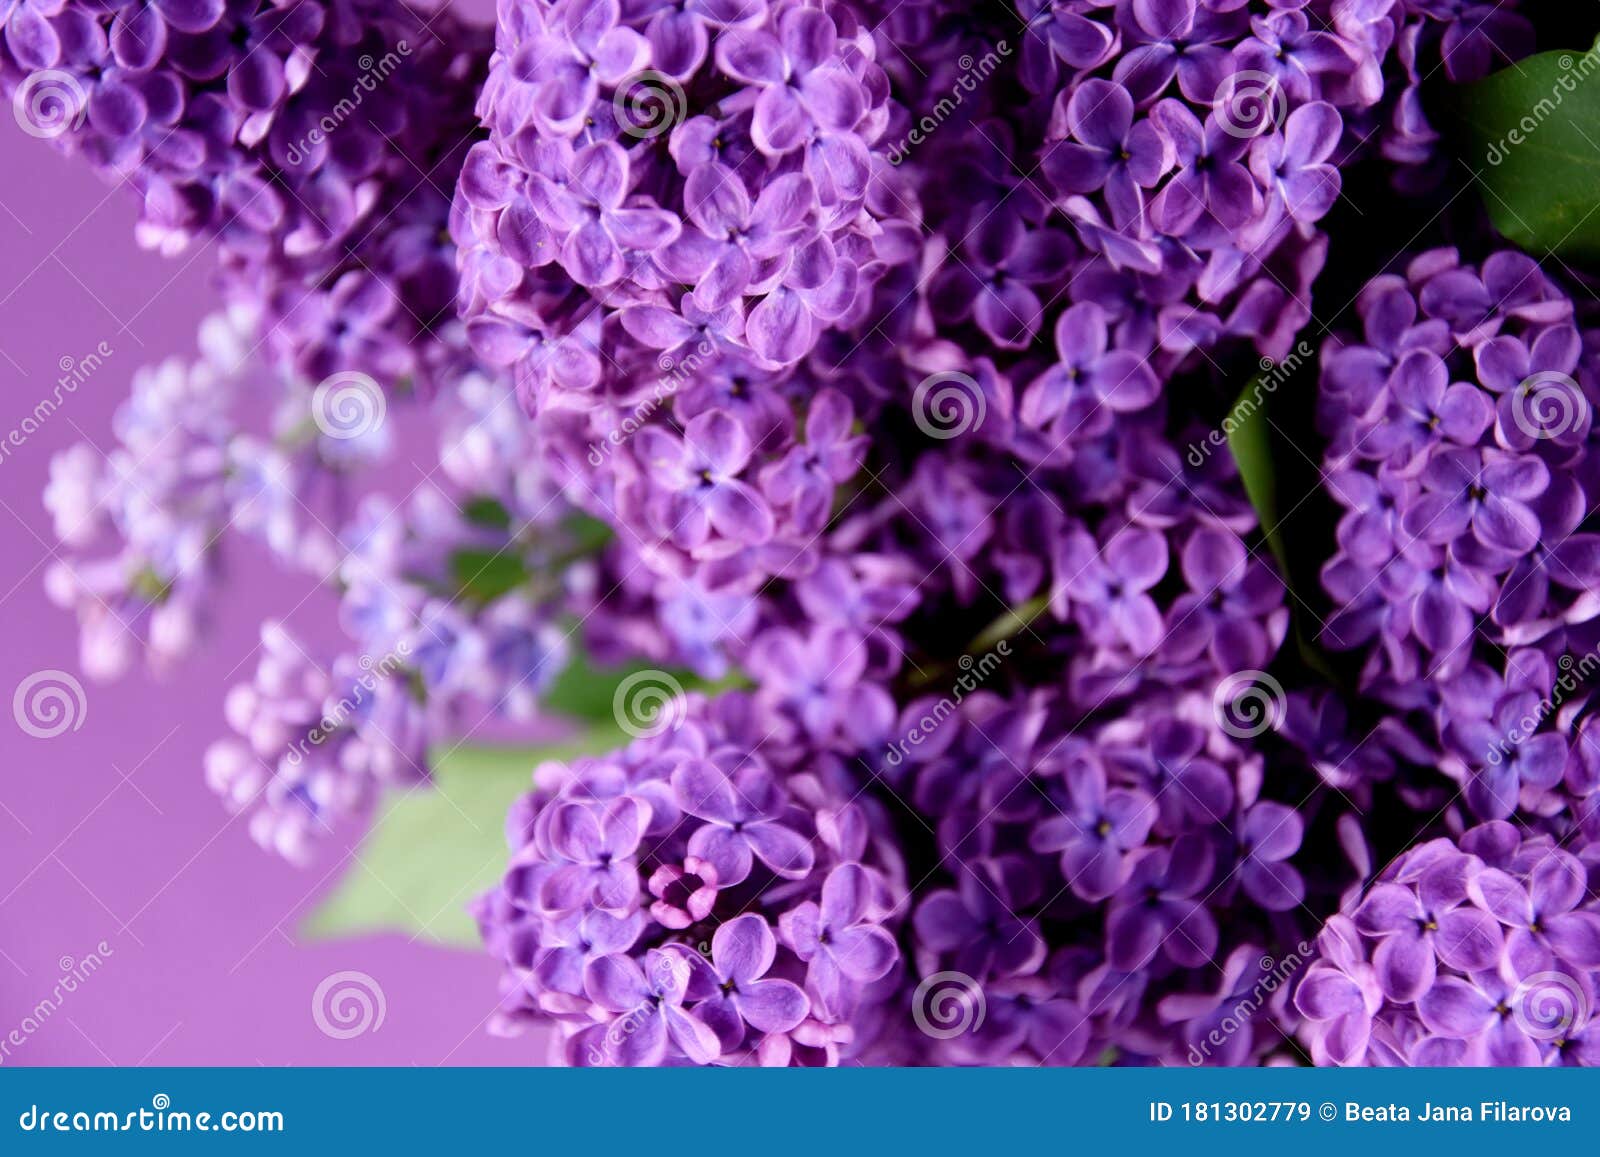 Hermosas Imágenes De Fondo De Flores De Lilac Imagen de archivo - Imagen de  detalle, verde: 181302779